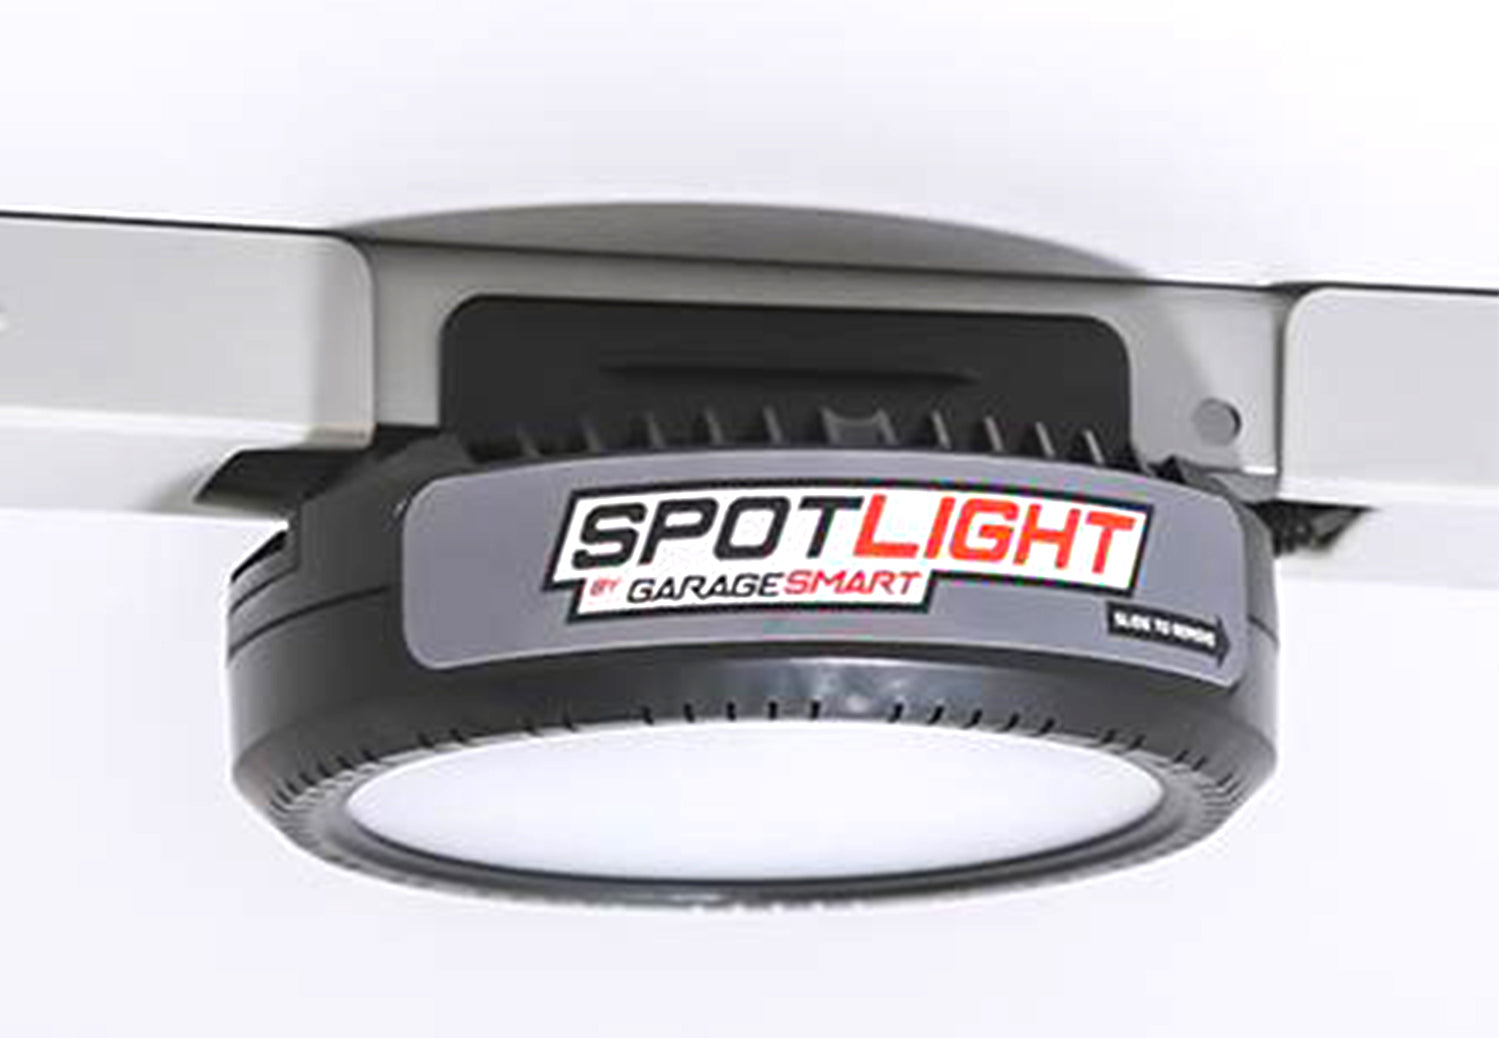 F0104 Garage Smart Spotlight In Use